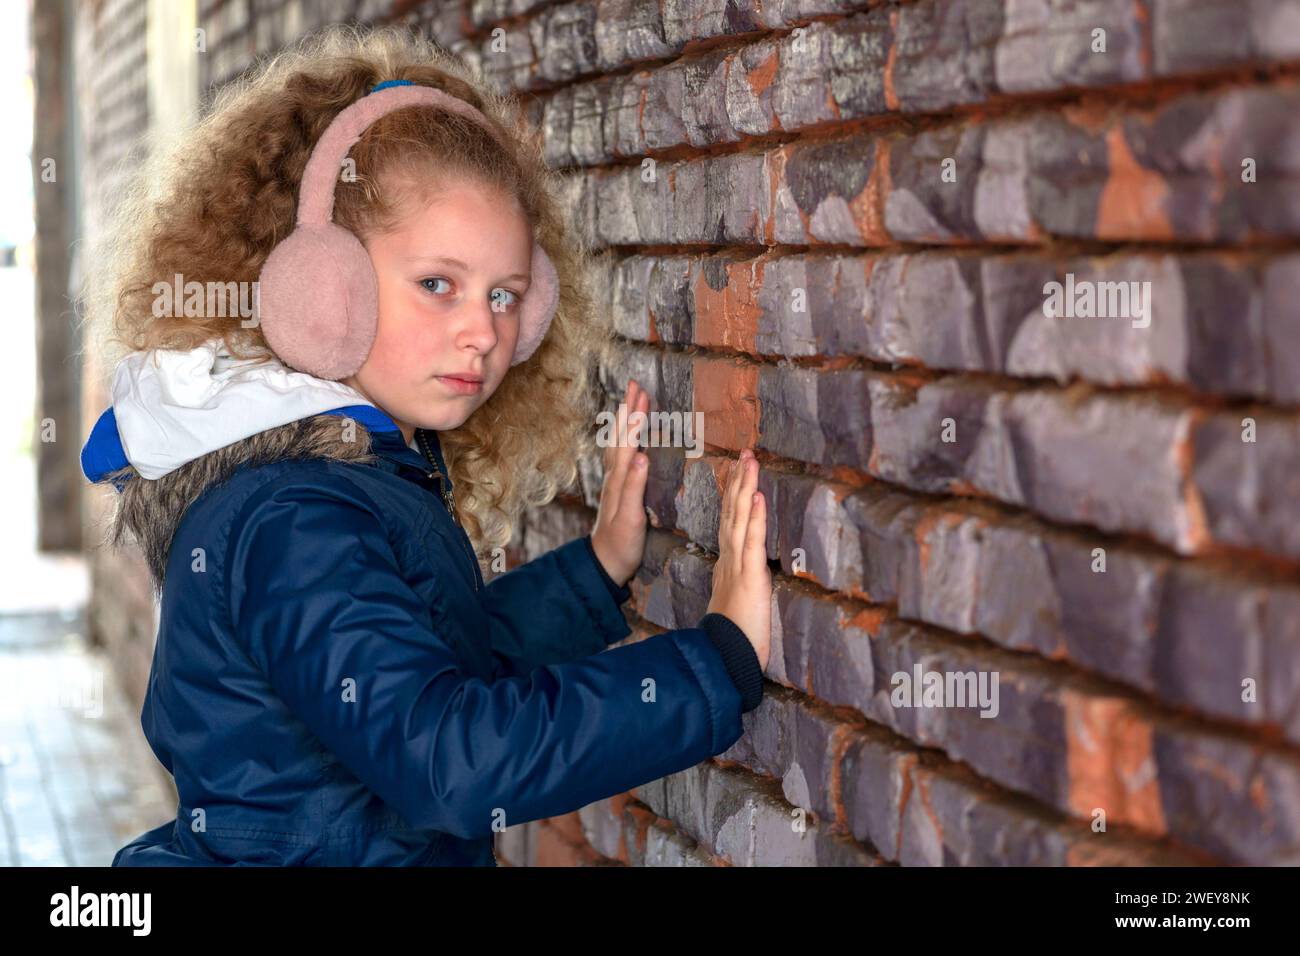 Mädchenhand in der Lücke der Wand. Der Teenager greift zum Mauerloch. Kind an der Ziegelmauer. Das Konzept von Stille, Rätsel, Spannung, Interesse Depr Stockfoto